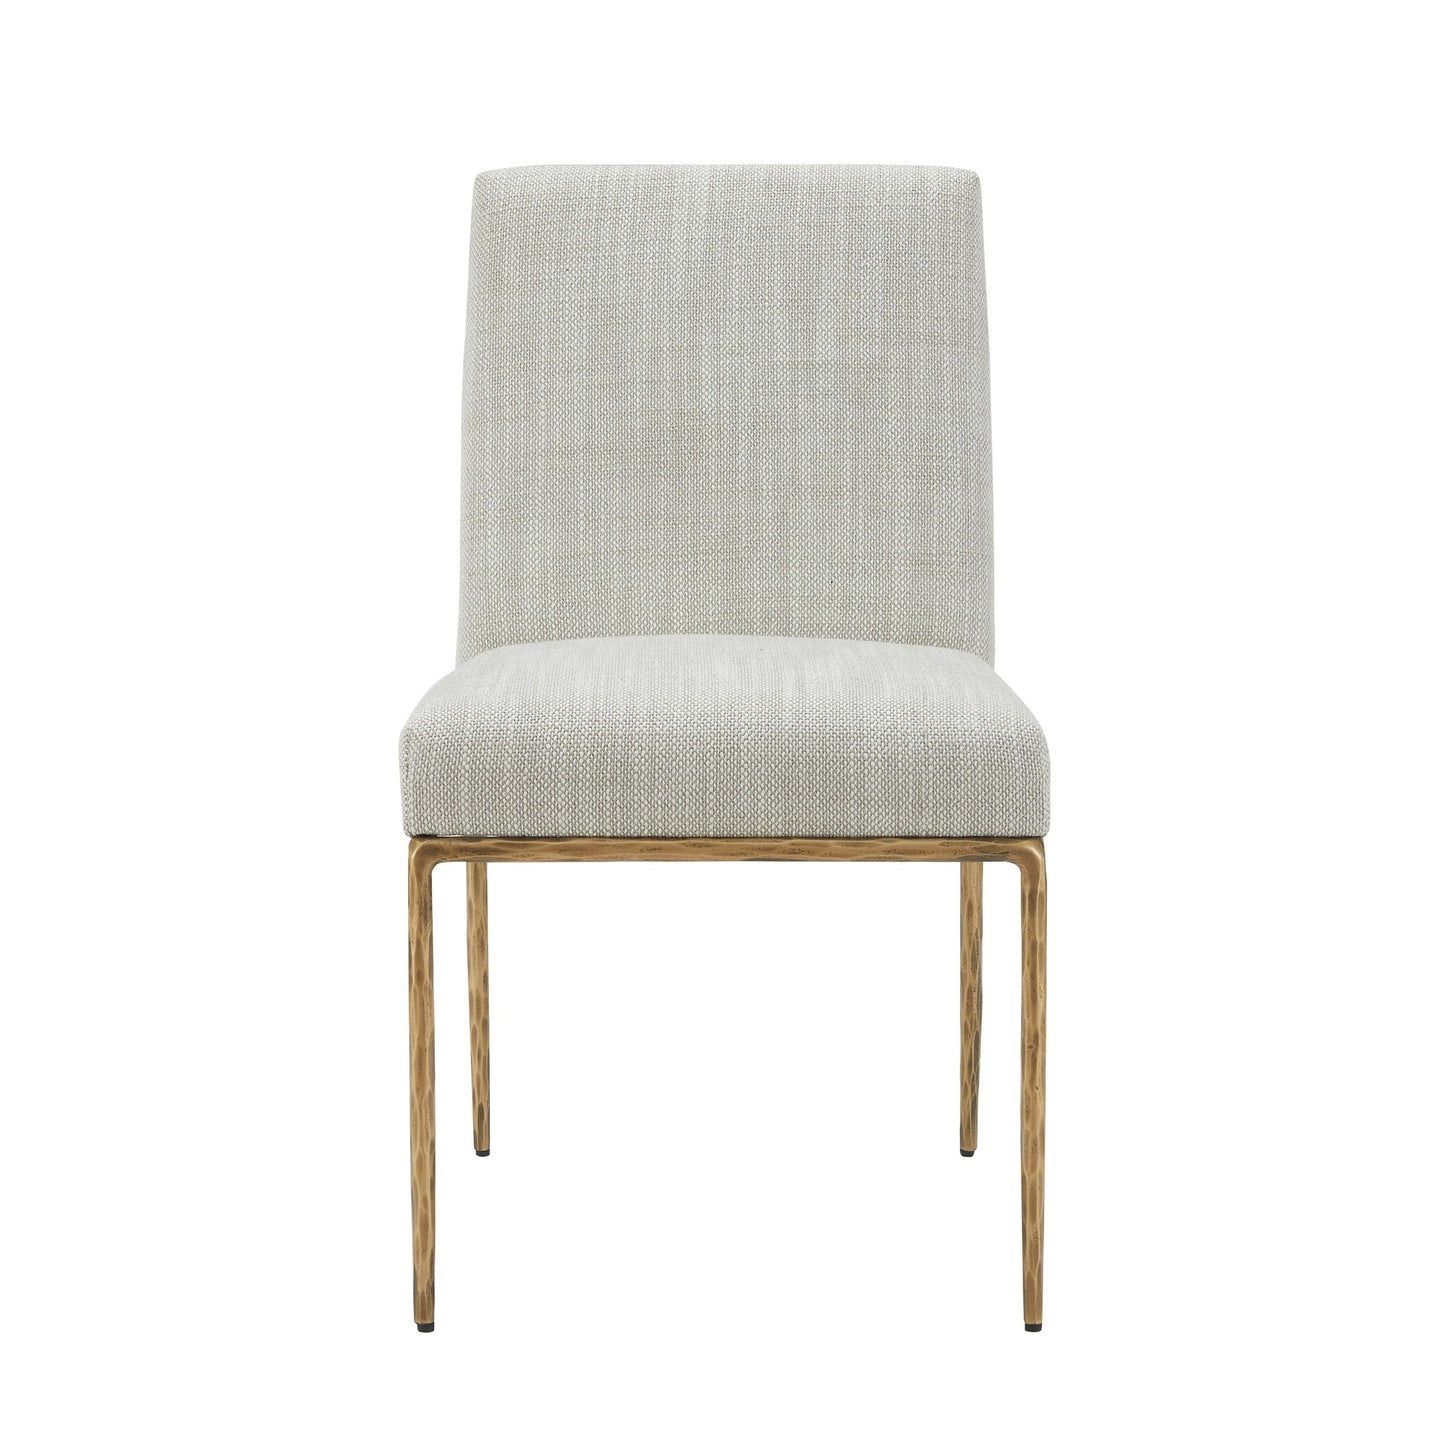 Modrest Beasley - Modern Off-White Linen + Brass Dining Chair